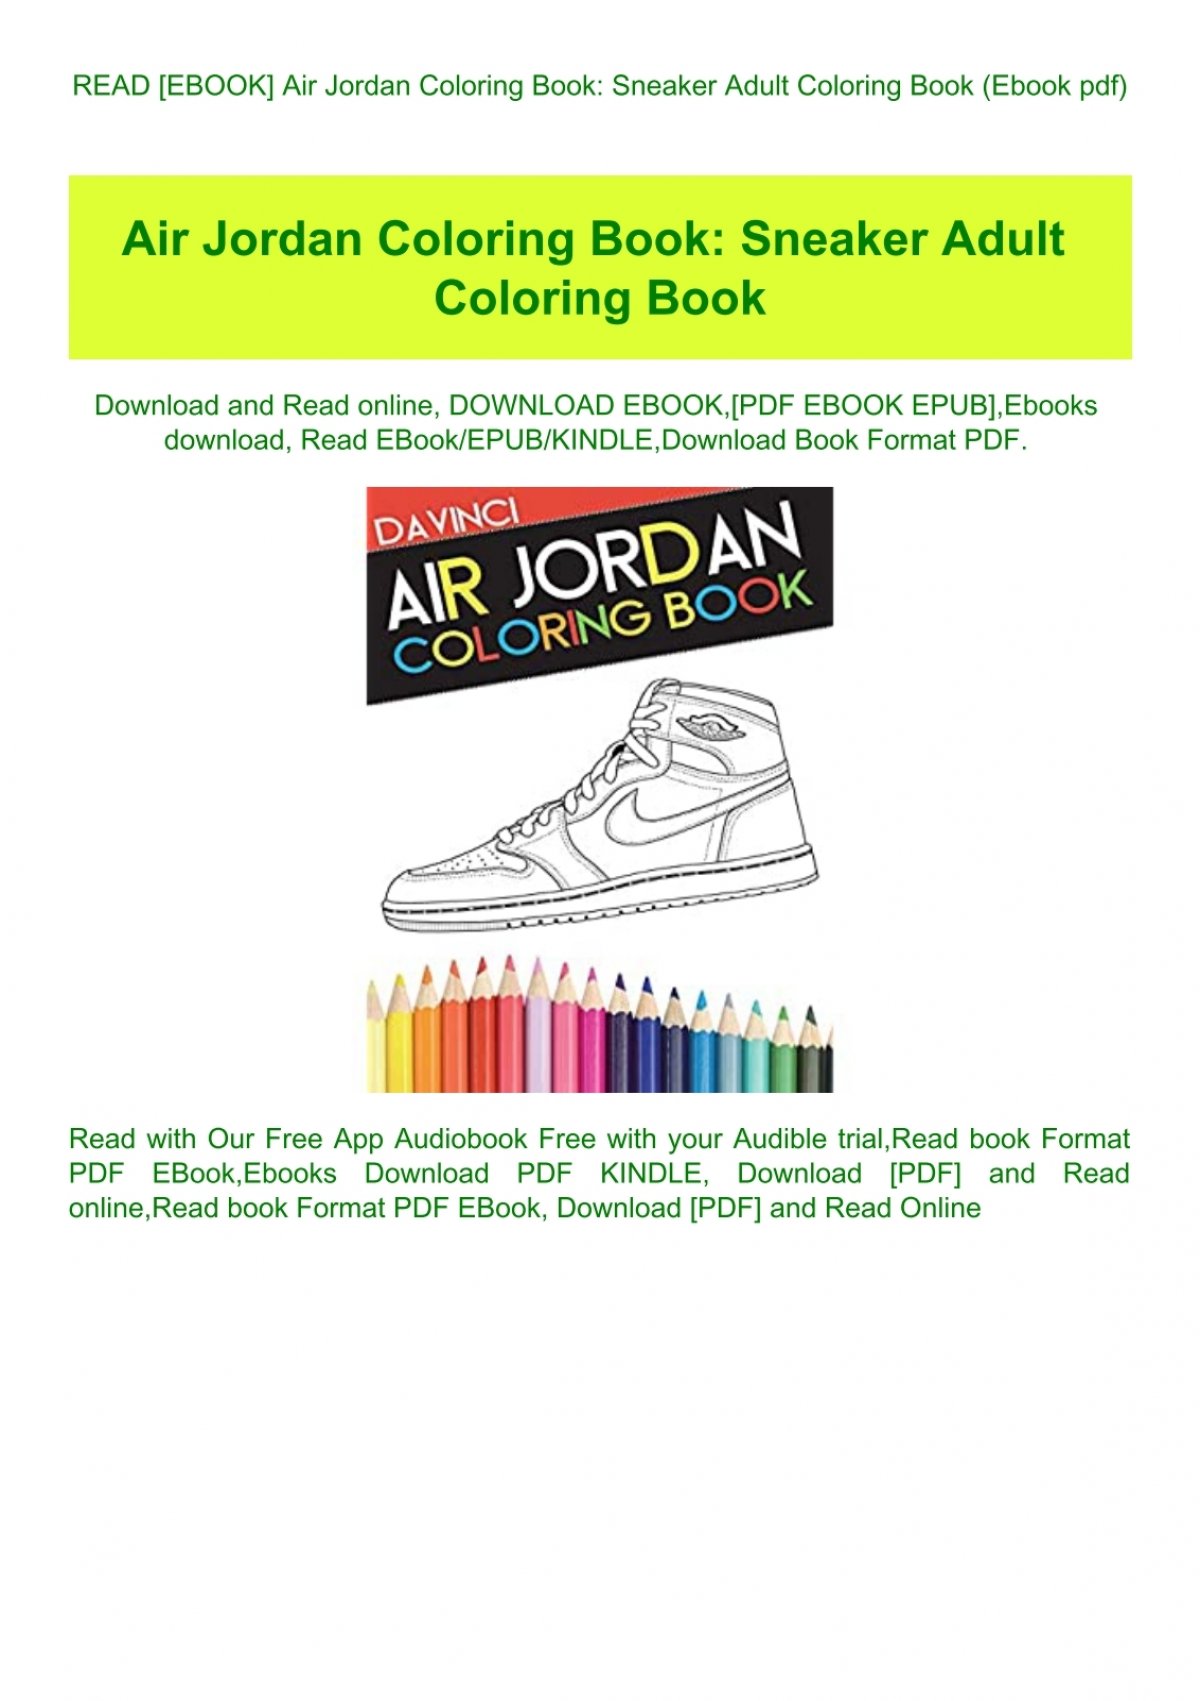 Download Read Ebook Air Jordan Coloring Book Sneaker Adult Coloring Book Ebook Pdf